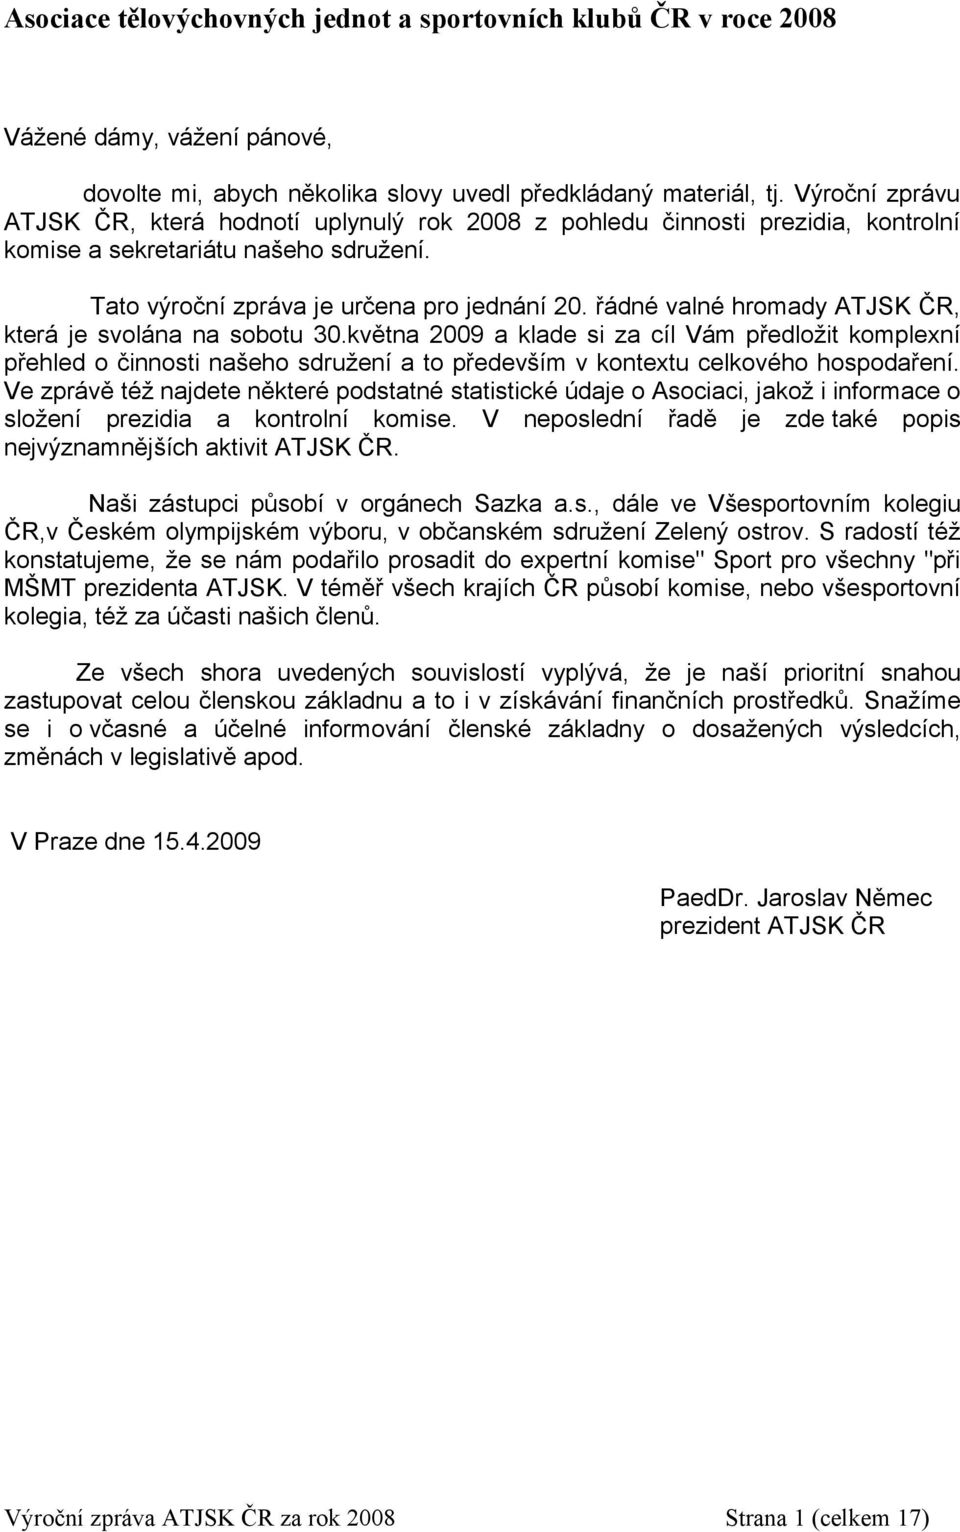 řádné valné hromady ATJSK ČR, která je svolána na sobotu 30.května 2009 a klade si za cíl Vám předložit komplexní přehled o činnosti našeho sdružení a to především v kontextu celkového hospodaření.